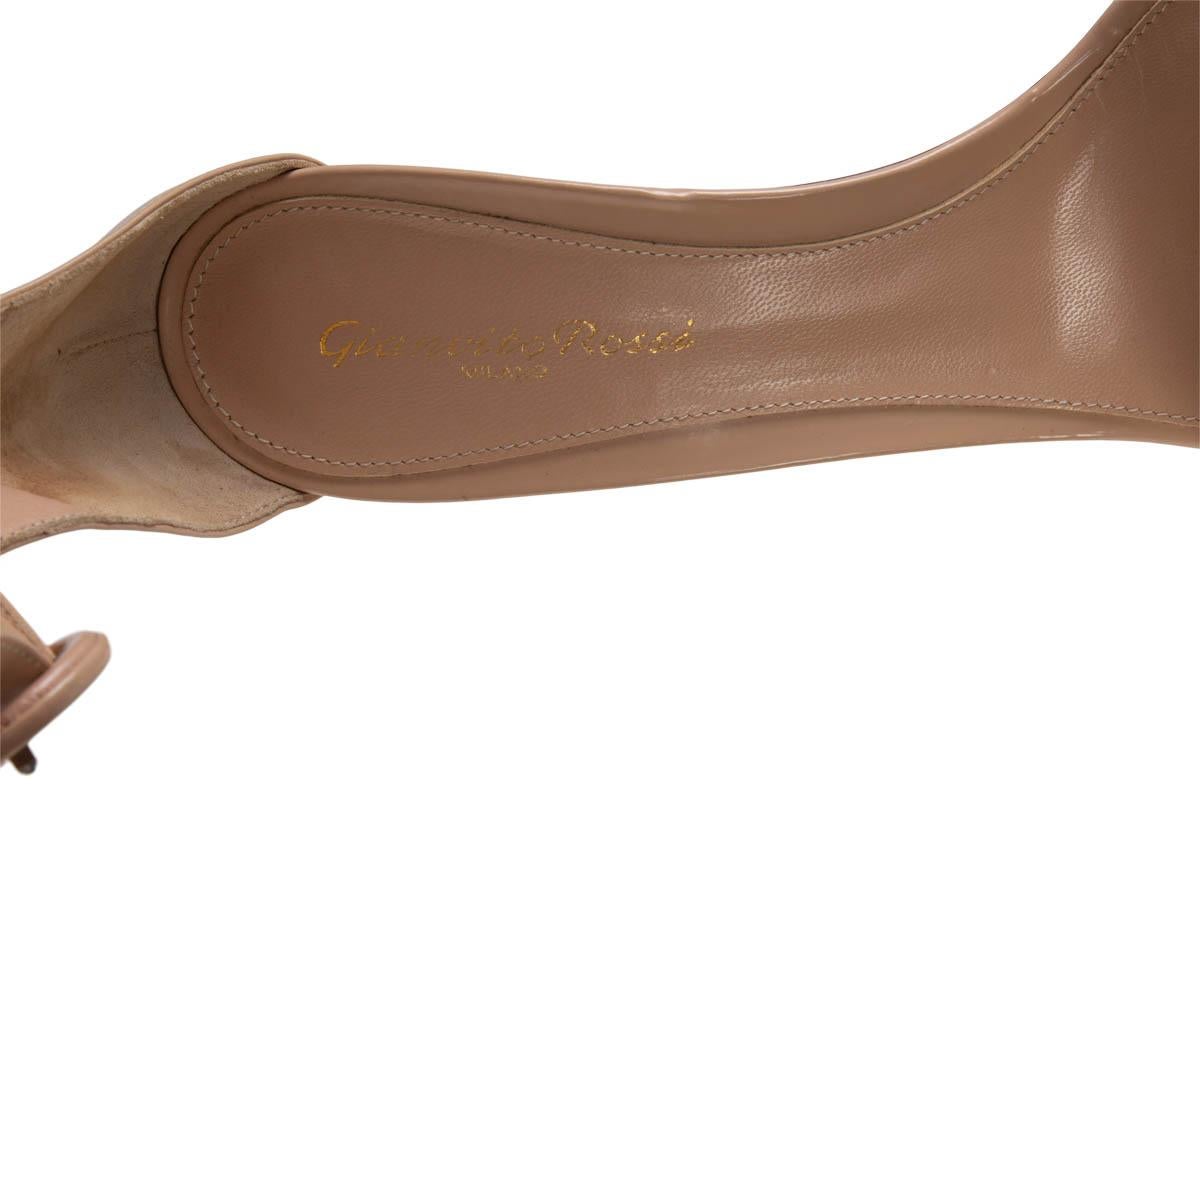 Women's GIANVITO ROSSI nude leather PORTOFINO 85 Sandals Shoes 38